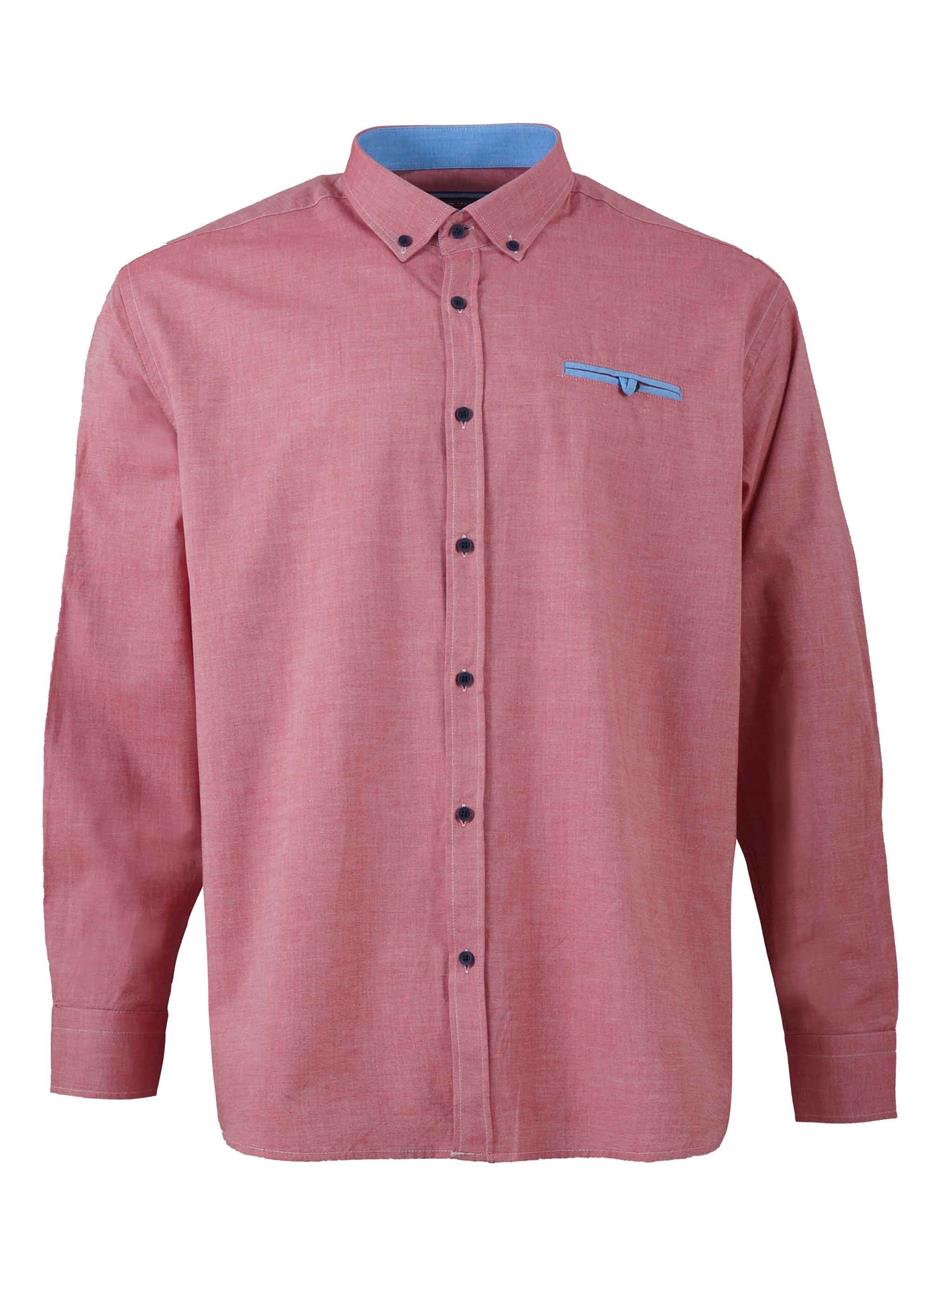 Ανδρικό πουκάμισο Frank Tailor κανονική γραμμή. Casual style